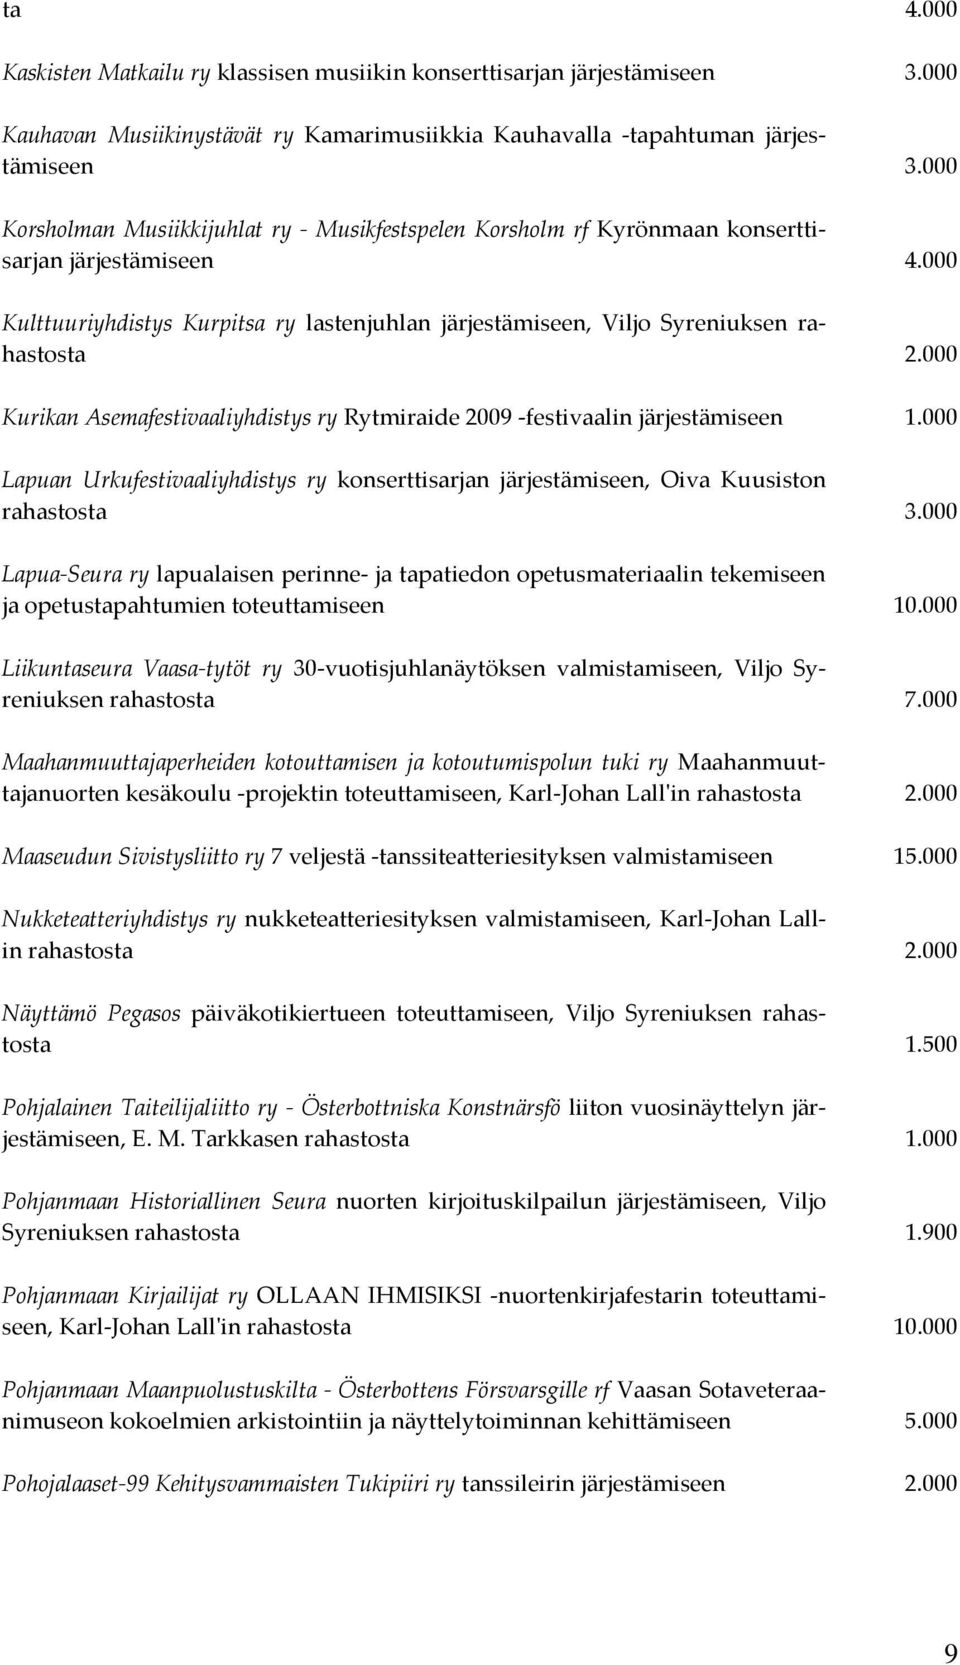 000 Kurikan Asemafestivaaliyhdistys ry Rytmiraide 2009 -festivaalin järjestämiseen 1.000 Lapuan Urkufestivaaliyhdistys ry konserttisarjan järjestämiseen, Oiva Kuusiston rahastosta 3.